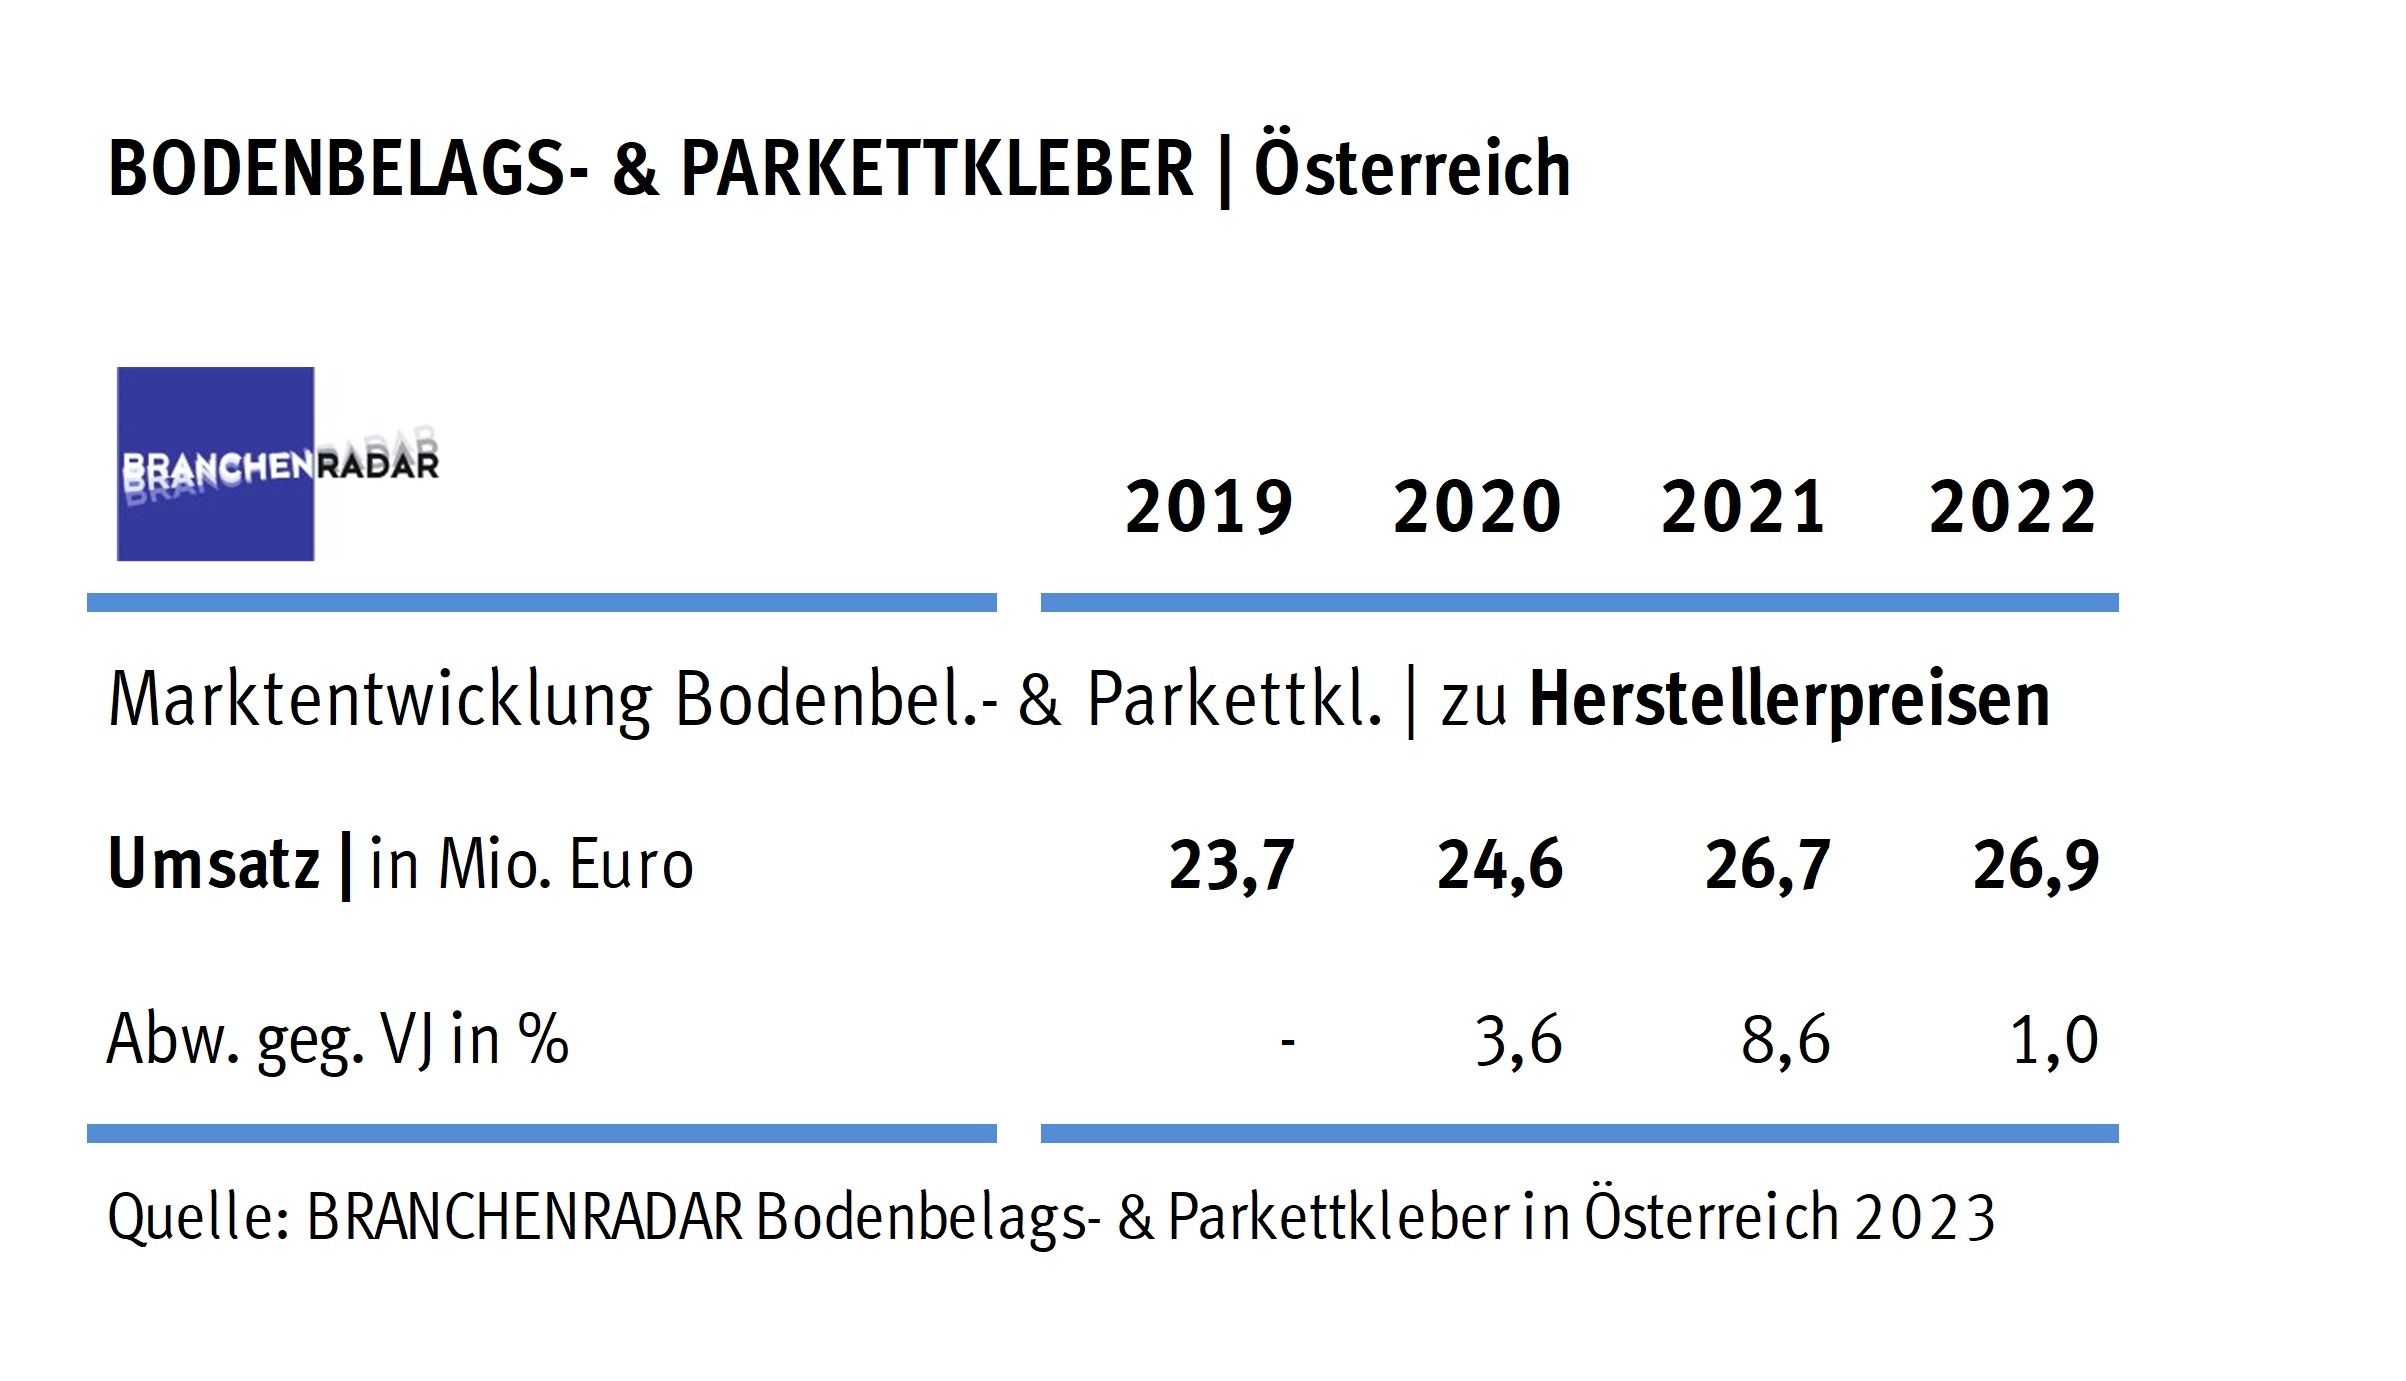 Marktentwicklung Bodenbelags- und Parkettkleber in Österreich | Herstellerumsatz in Mio. Euro